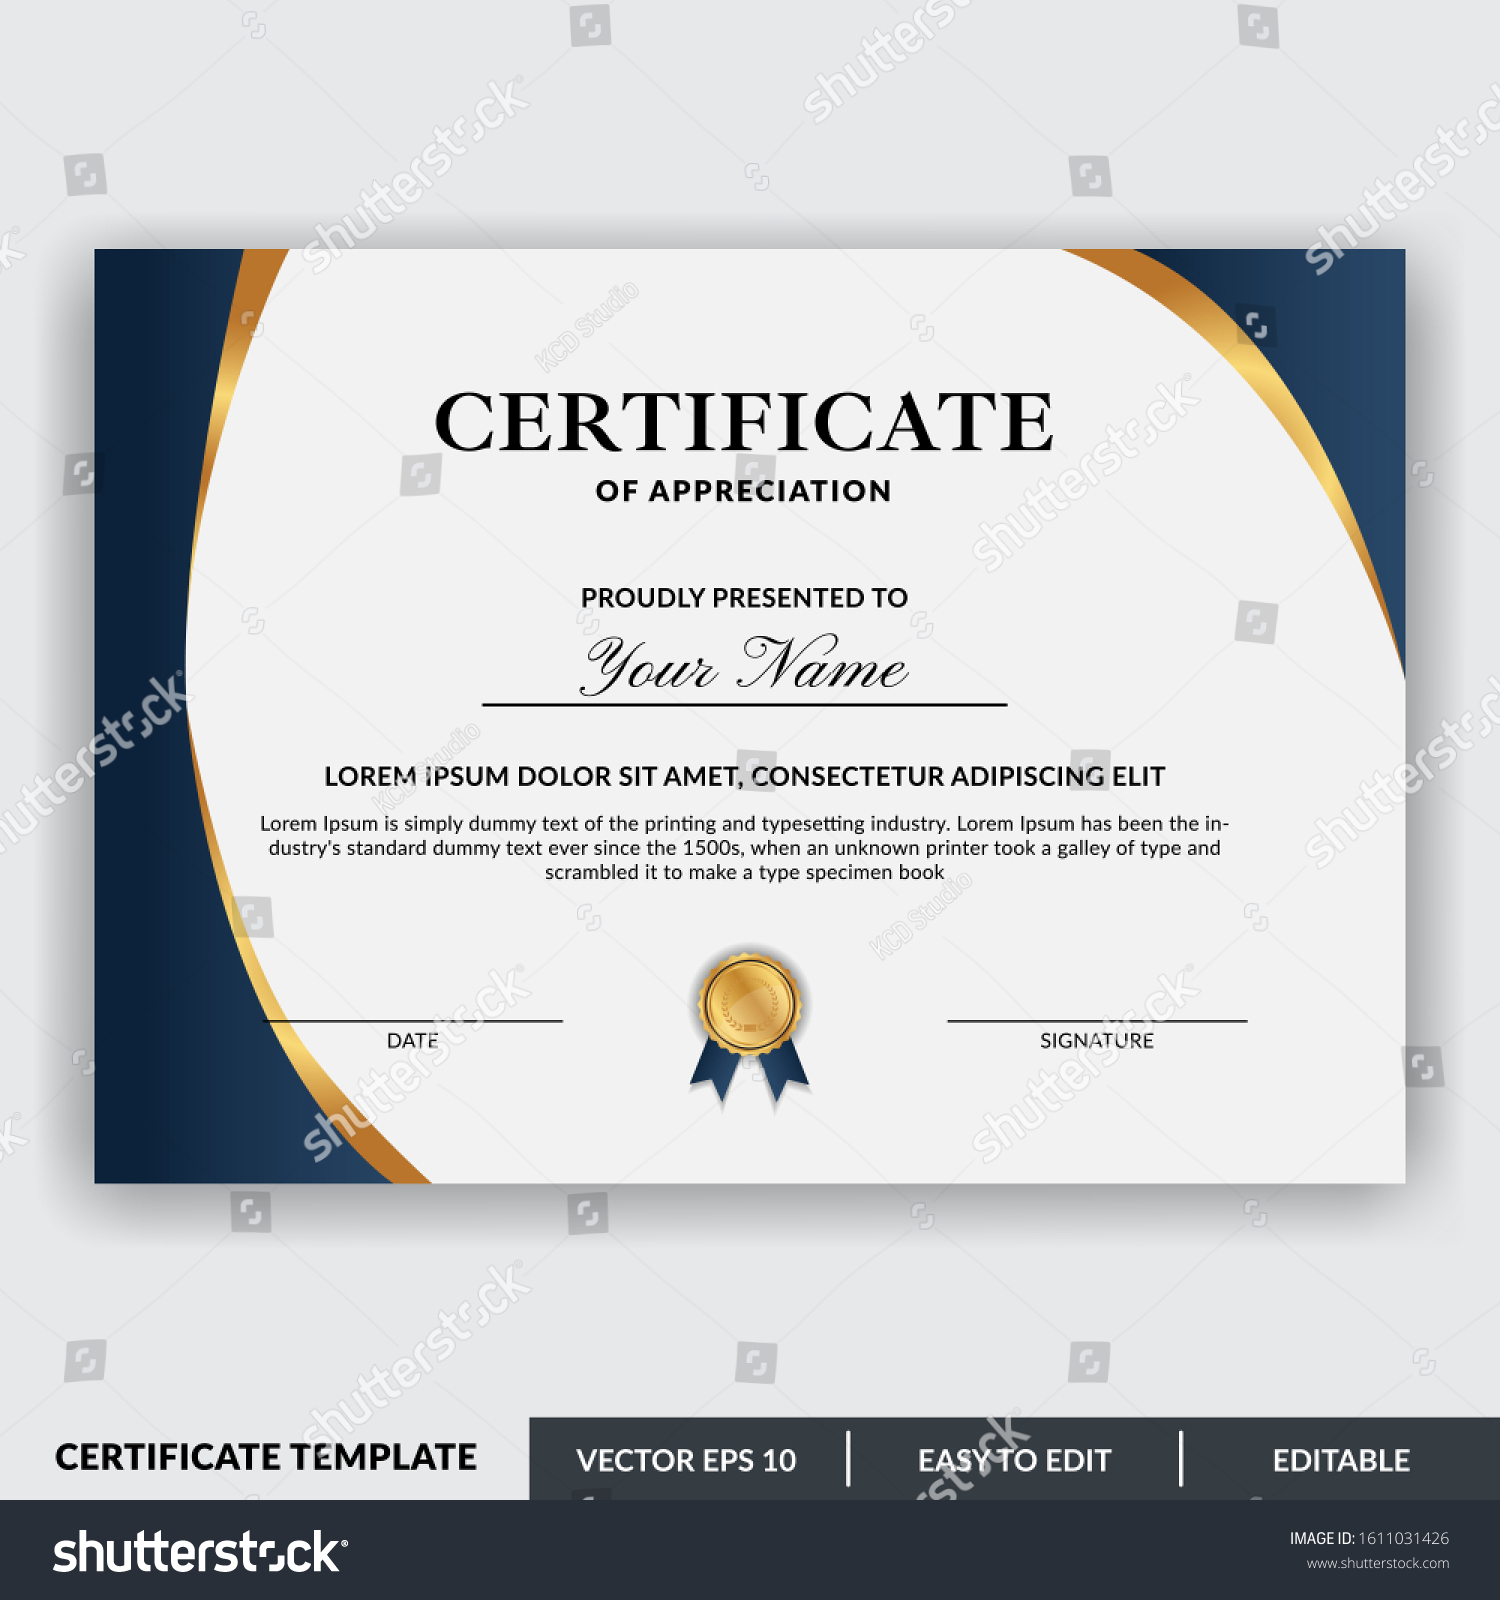 Certificate Appreciation Award Template Design Vector Stock Vector For Certificates Of Appreciation Template